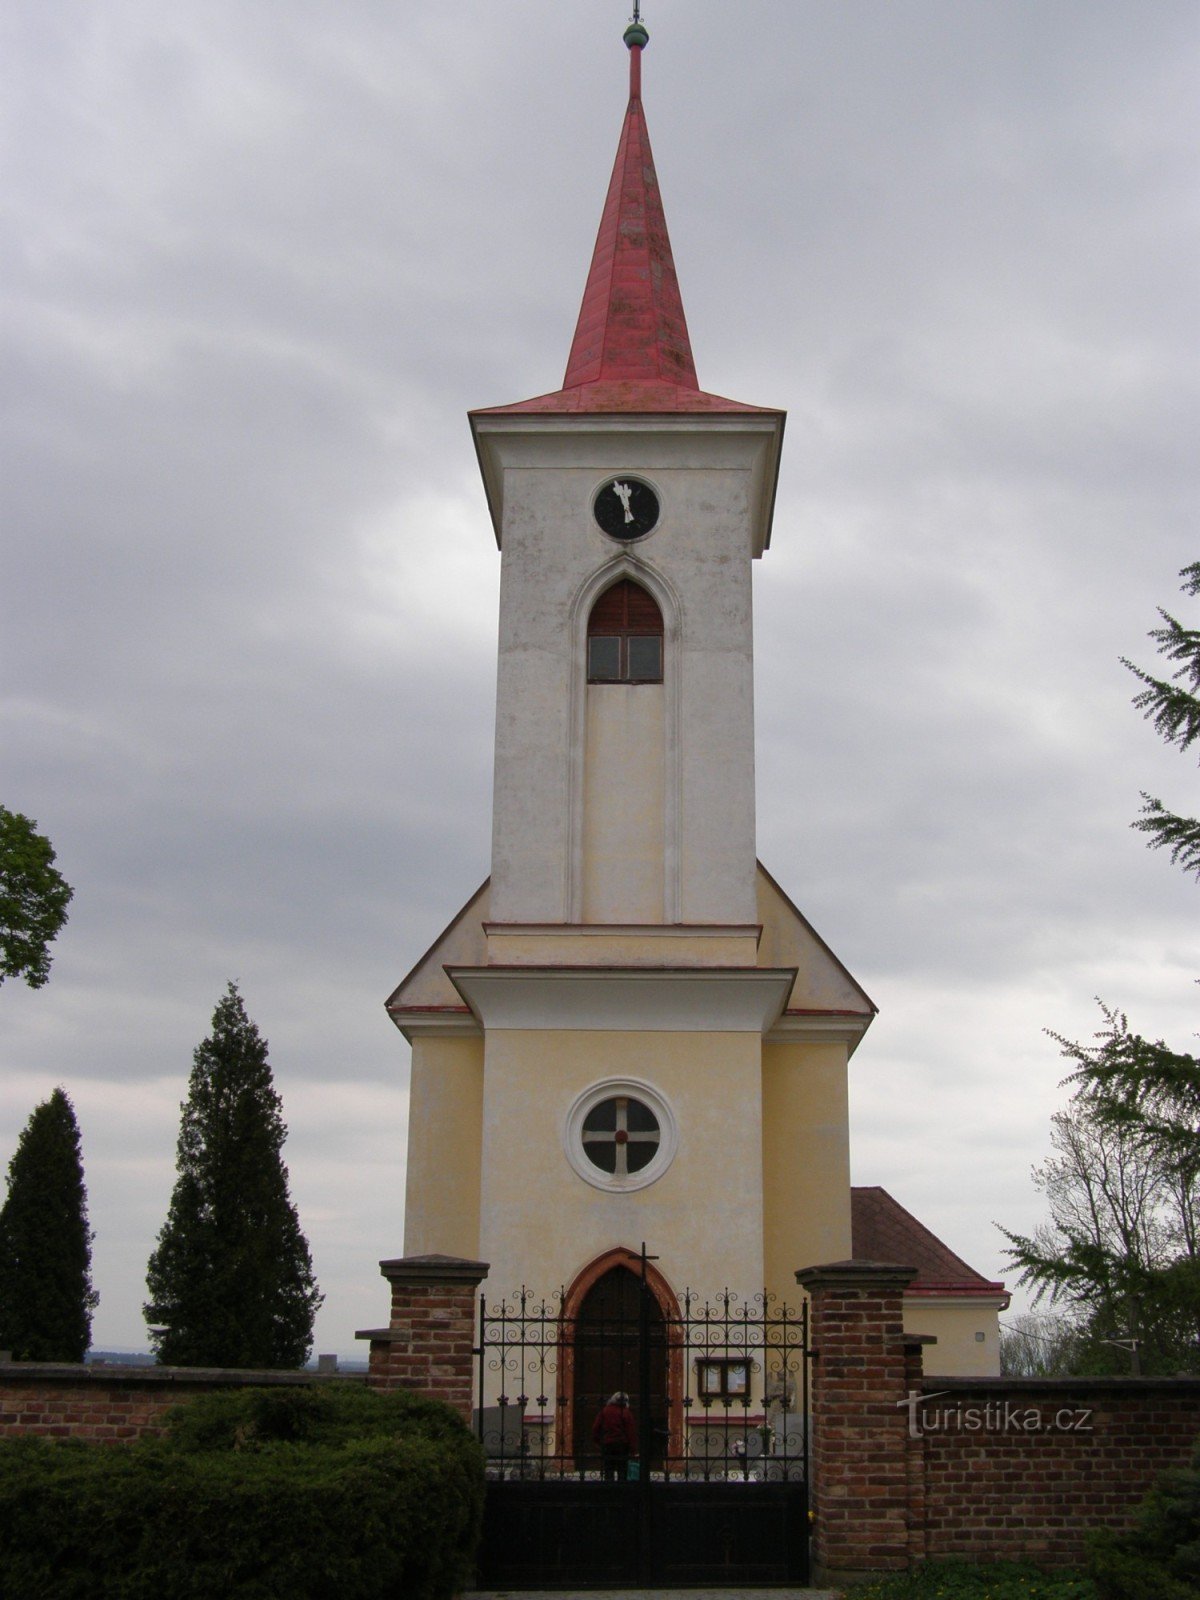 Velichovky - Az Úr színeváltozásának temploma